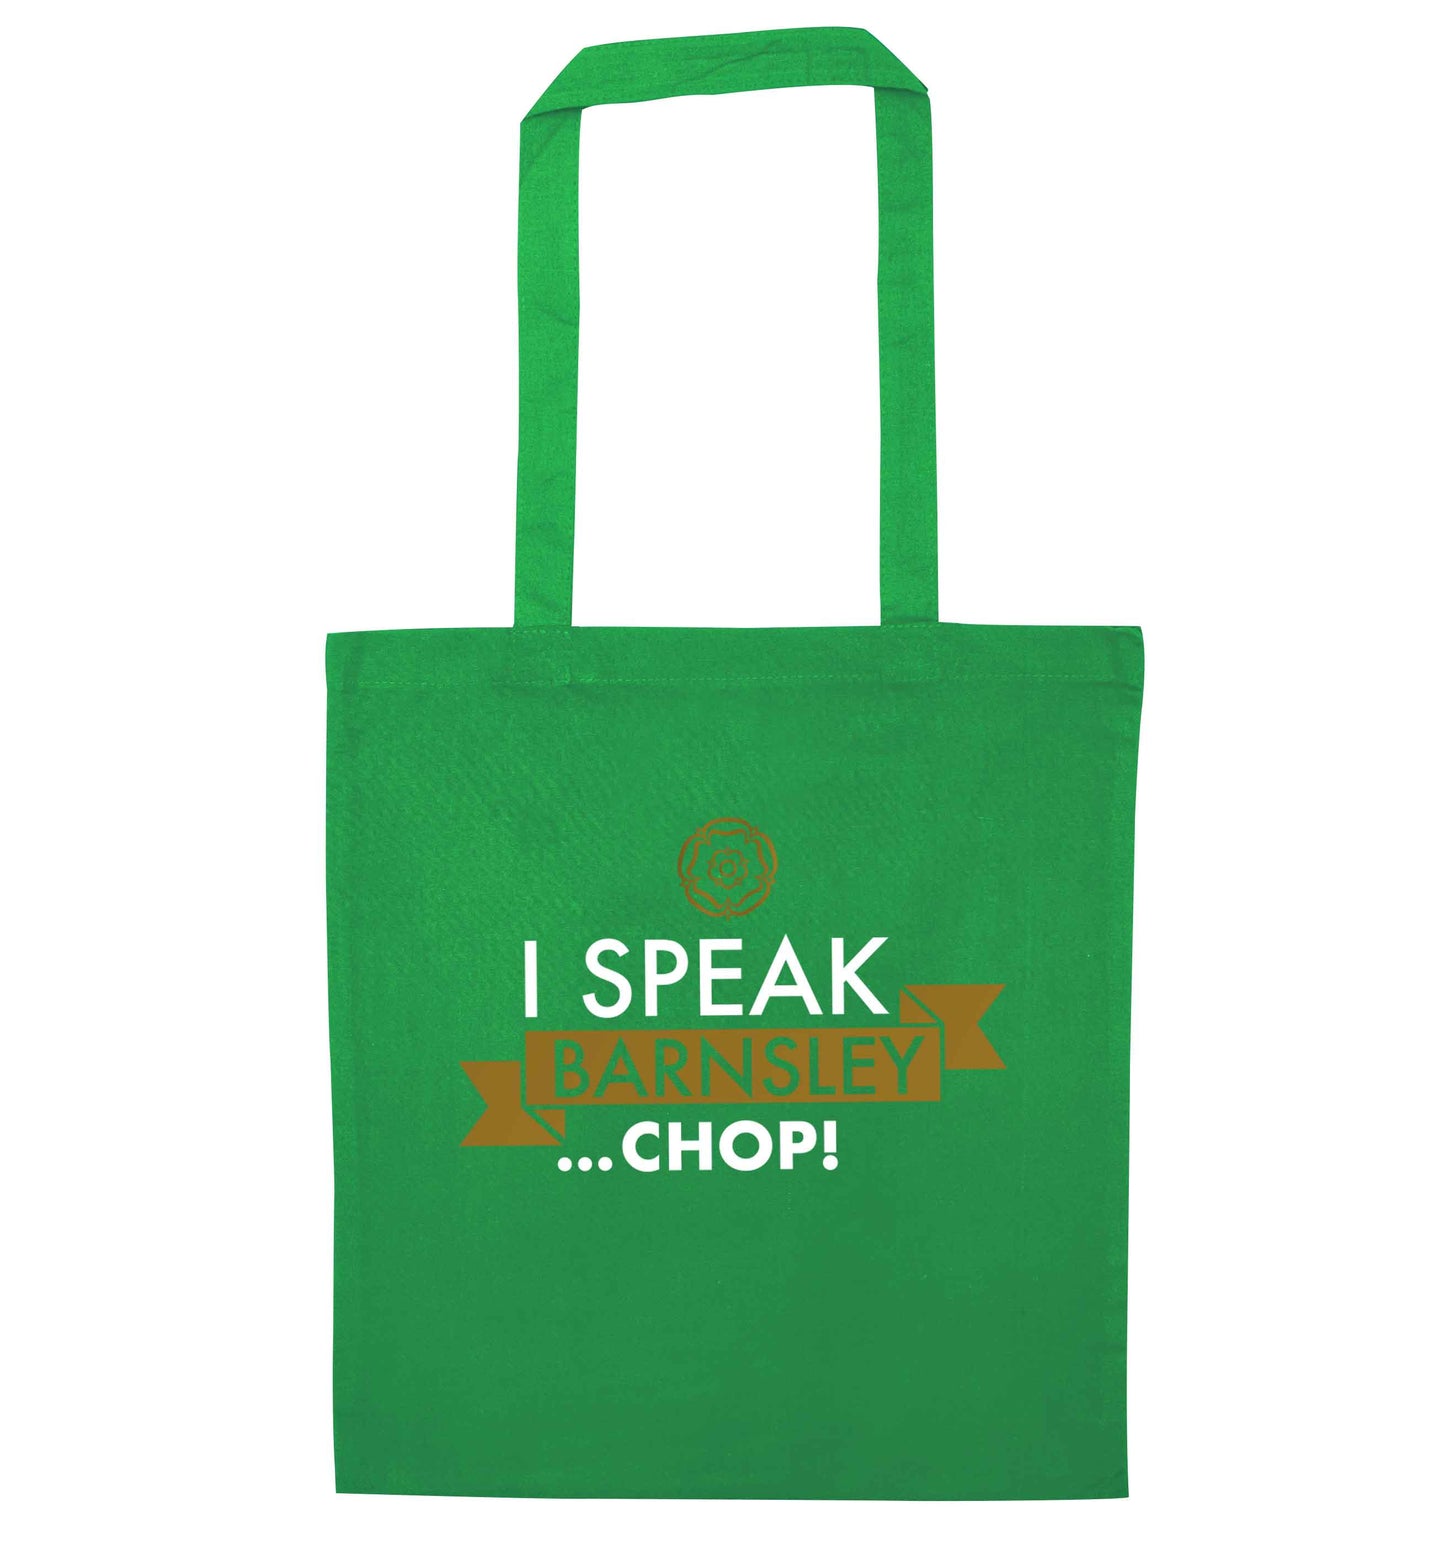 I speak Barnsley...chop! green tote bag